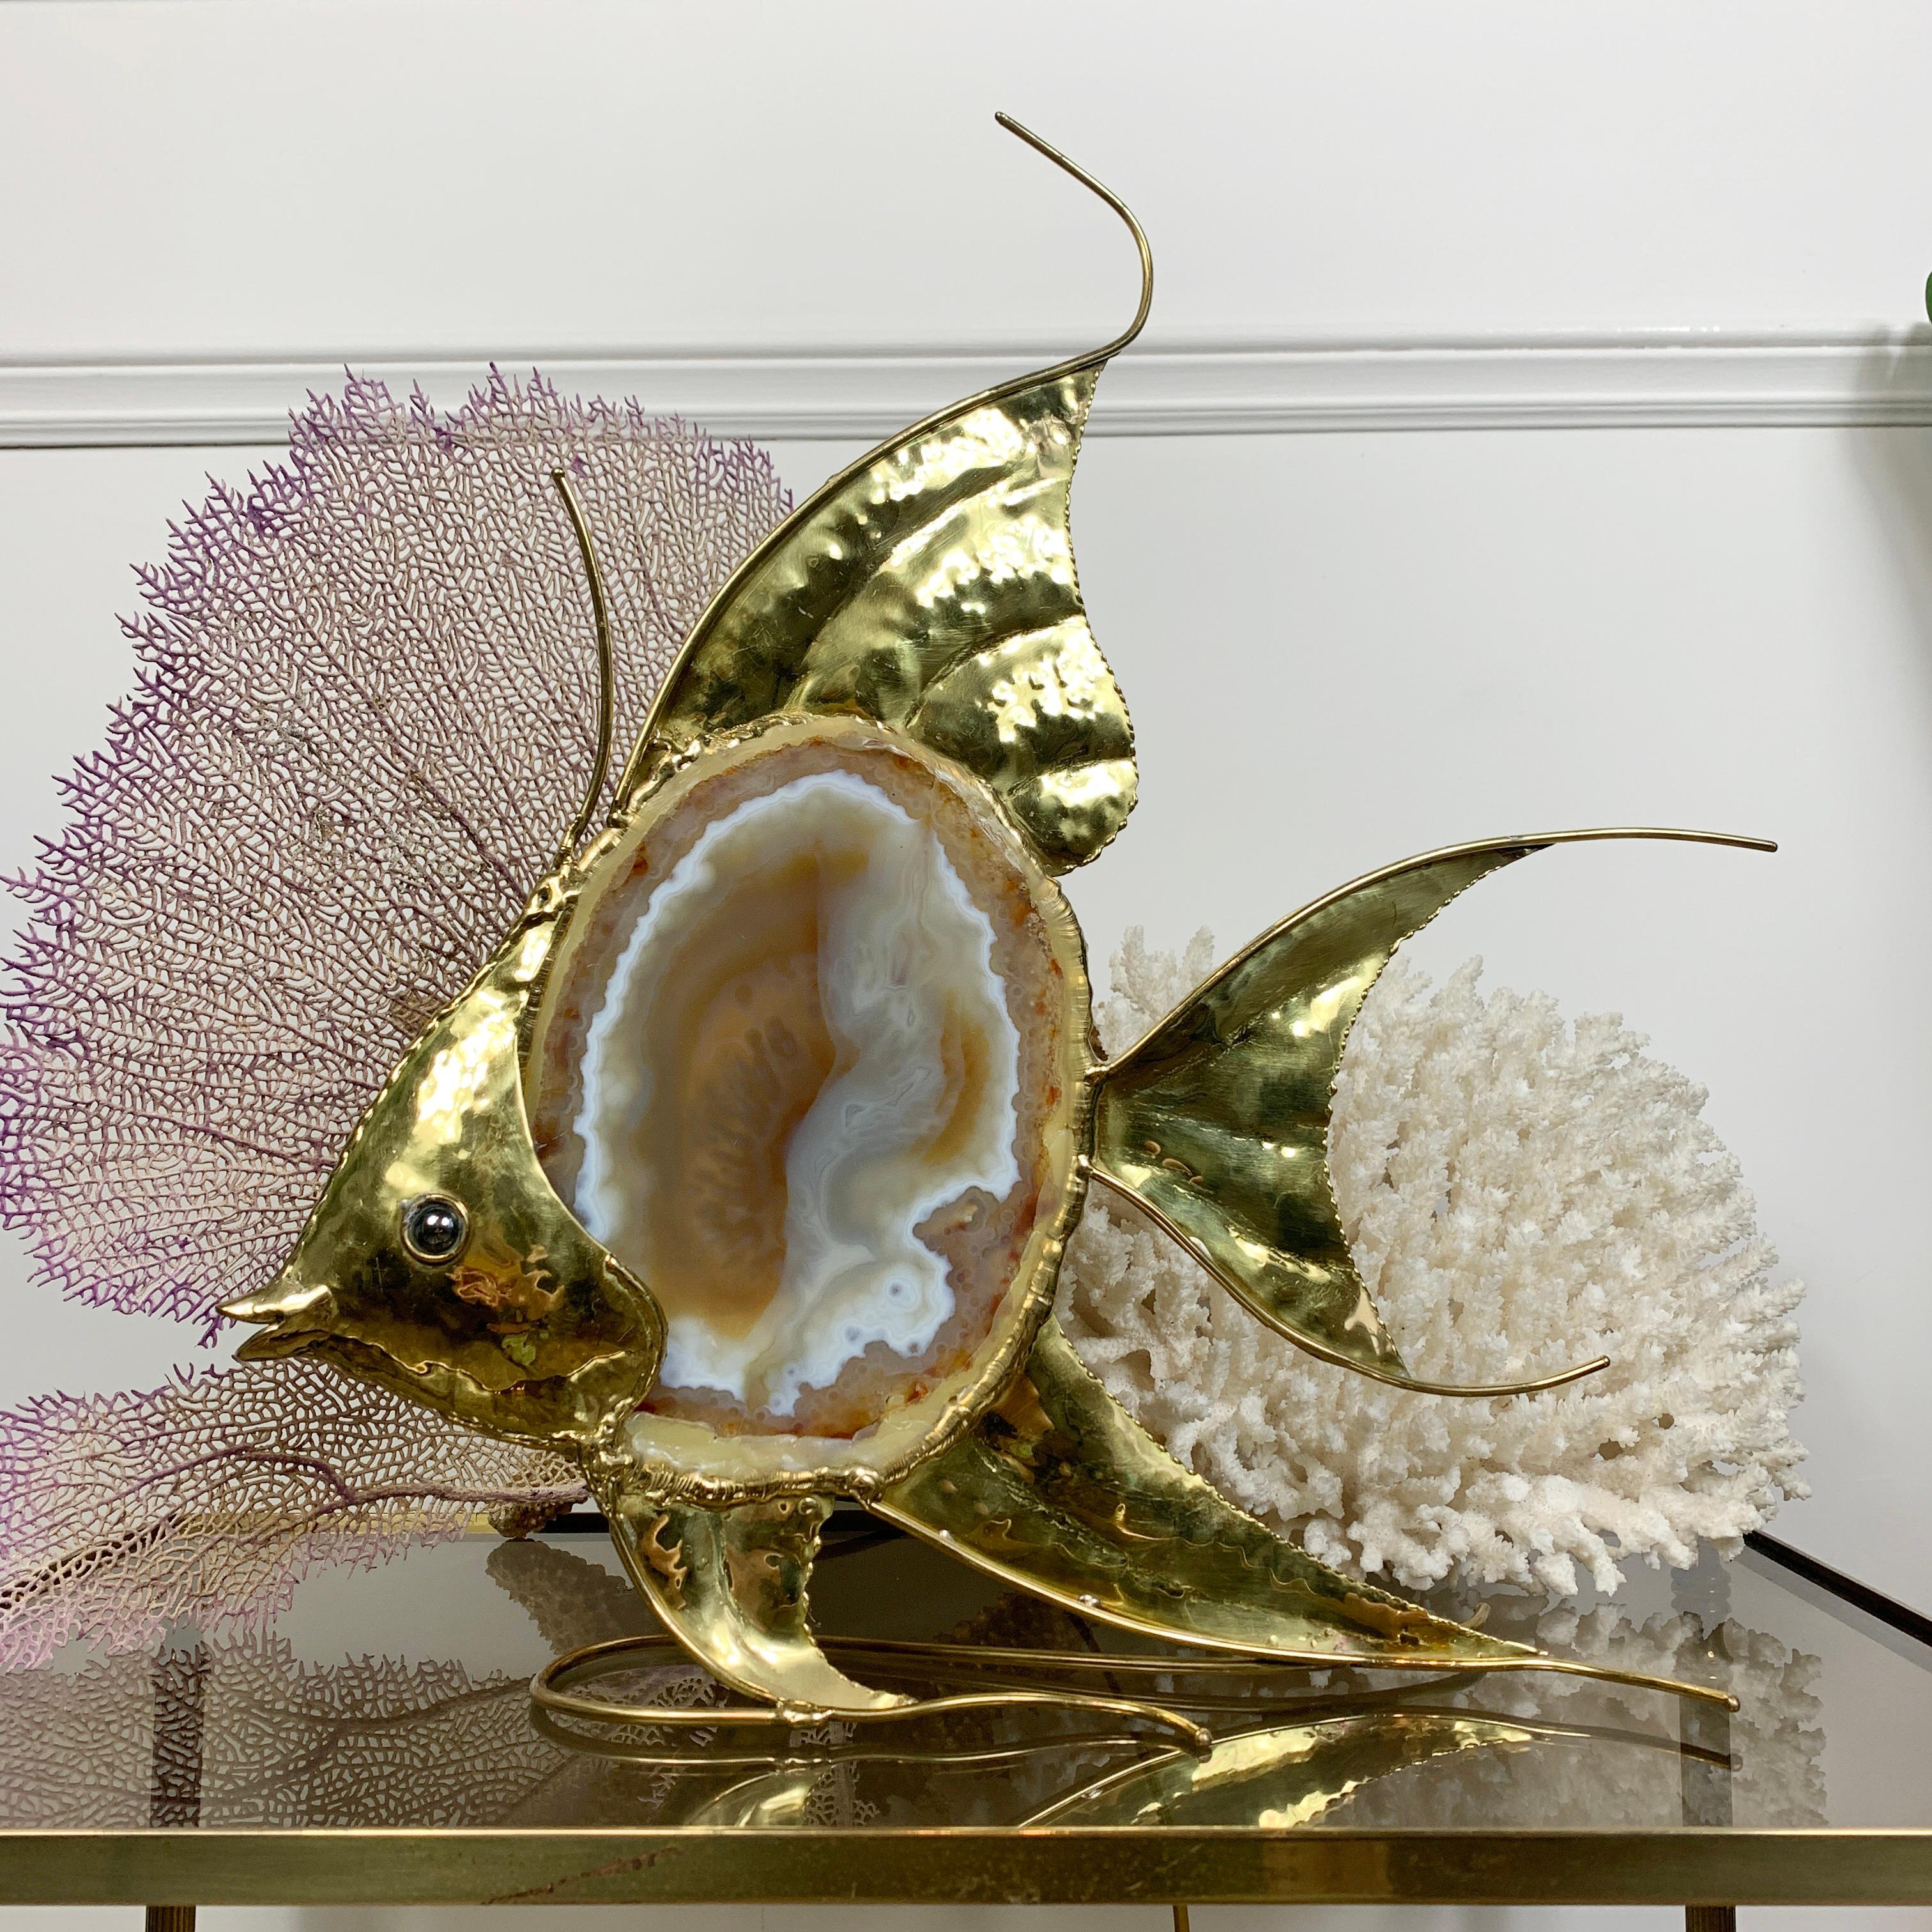 Fantastique sculpture de poisson ange de Duval Brasseur, une grande tranche d'agate recouvre l'unique douille de la lampe, qui s'illumine lorsqu'elle est allumée.
Cette pièce de grandes proportions, en excellent état, date des années